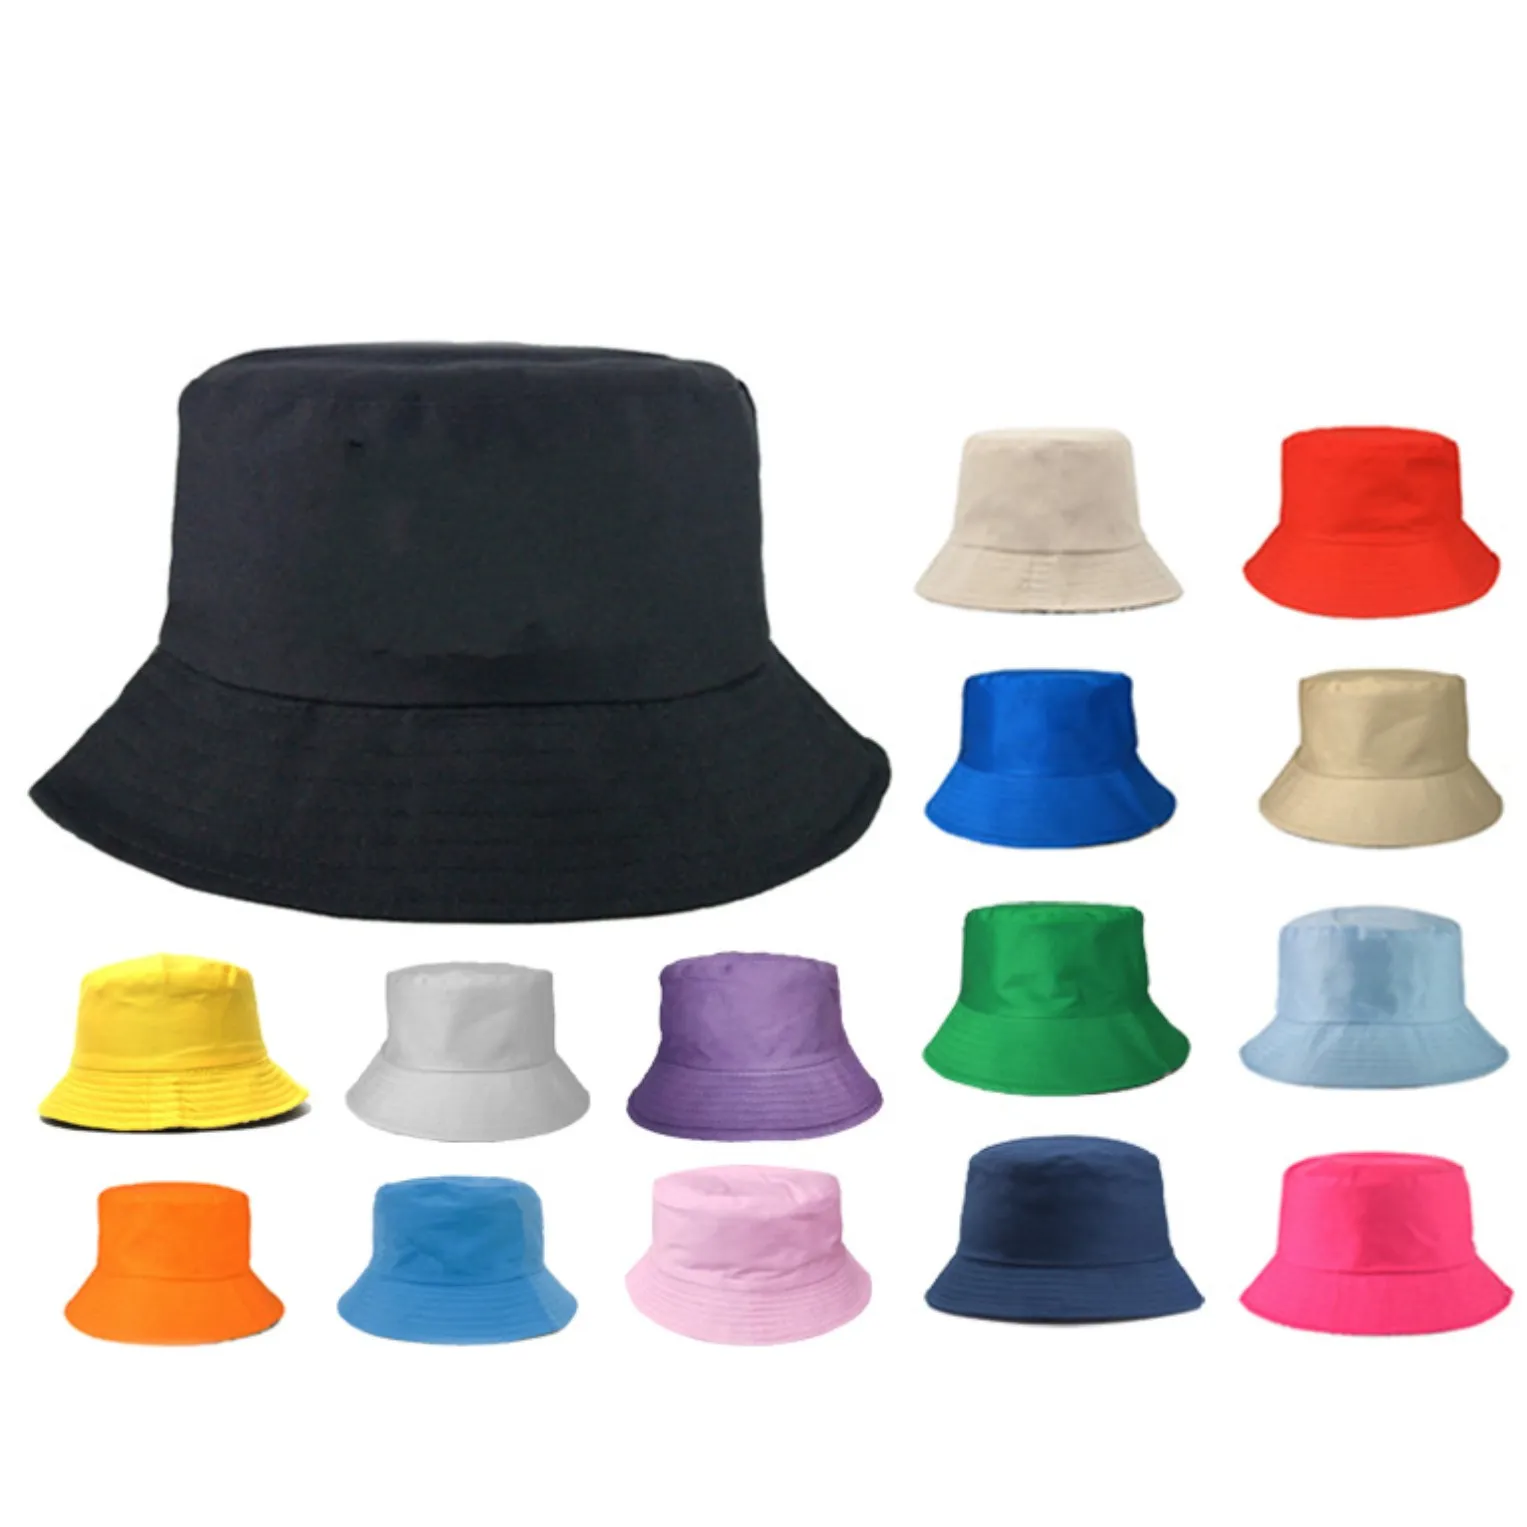 Crianças adultos balde chapéu boné de algodão chapéus de pesca menino menina pescador viseira de sol do bebê verão dobrável praia cappelli cor sólida